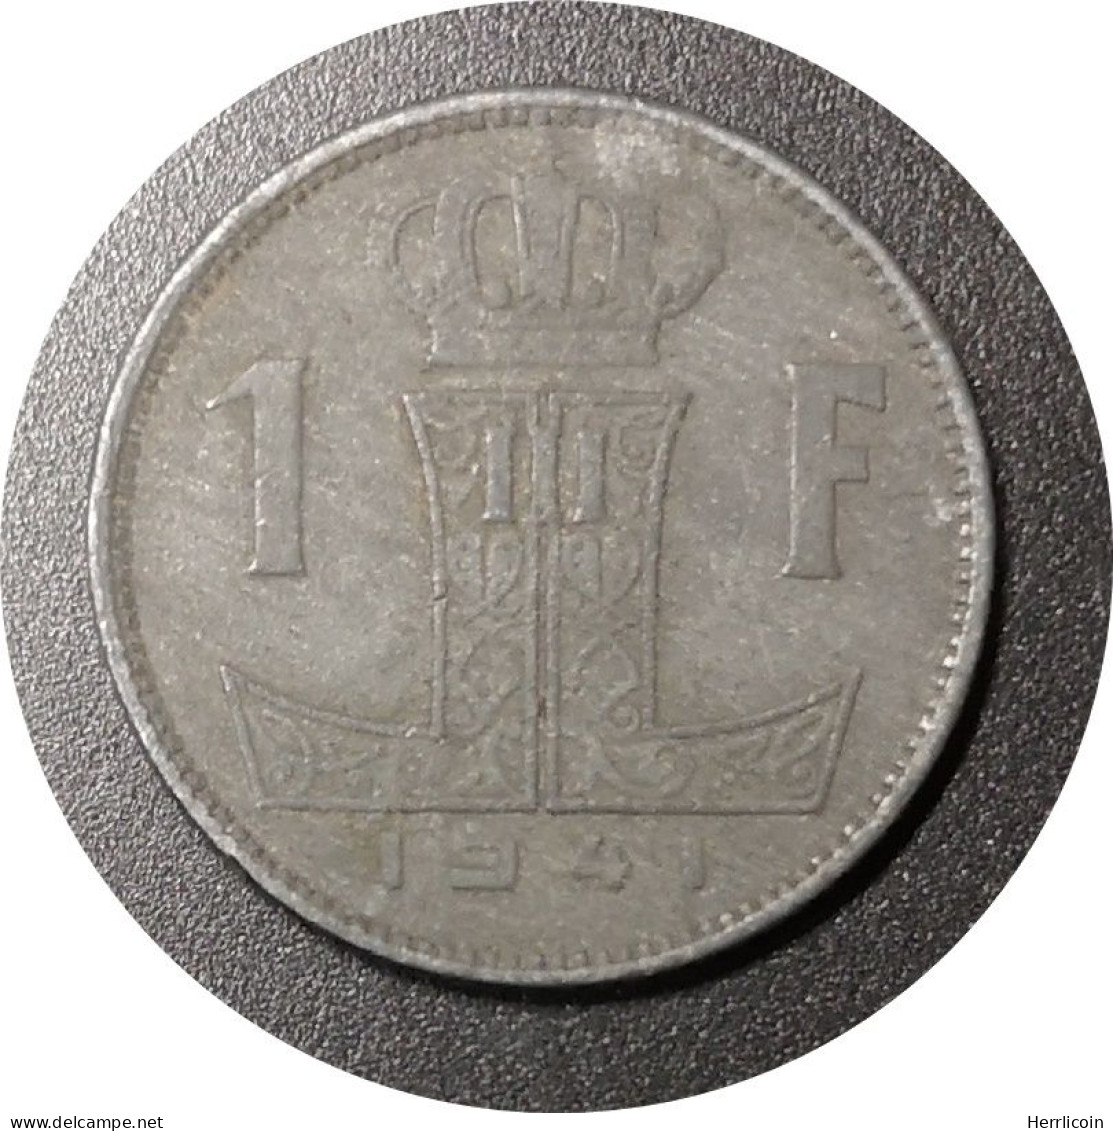 Monnaie Belgique - 1941 - 1 Franc - Léopold III - Type Rau Belgique-België - 1 Frank